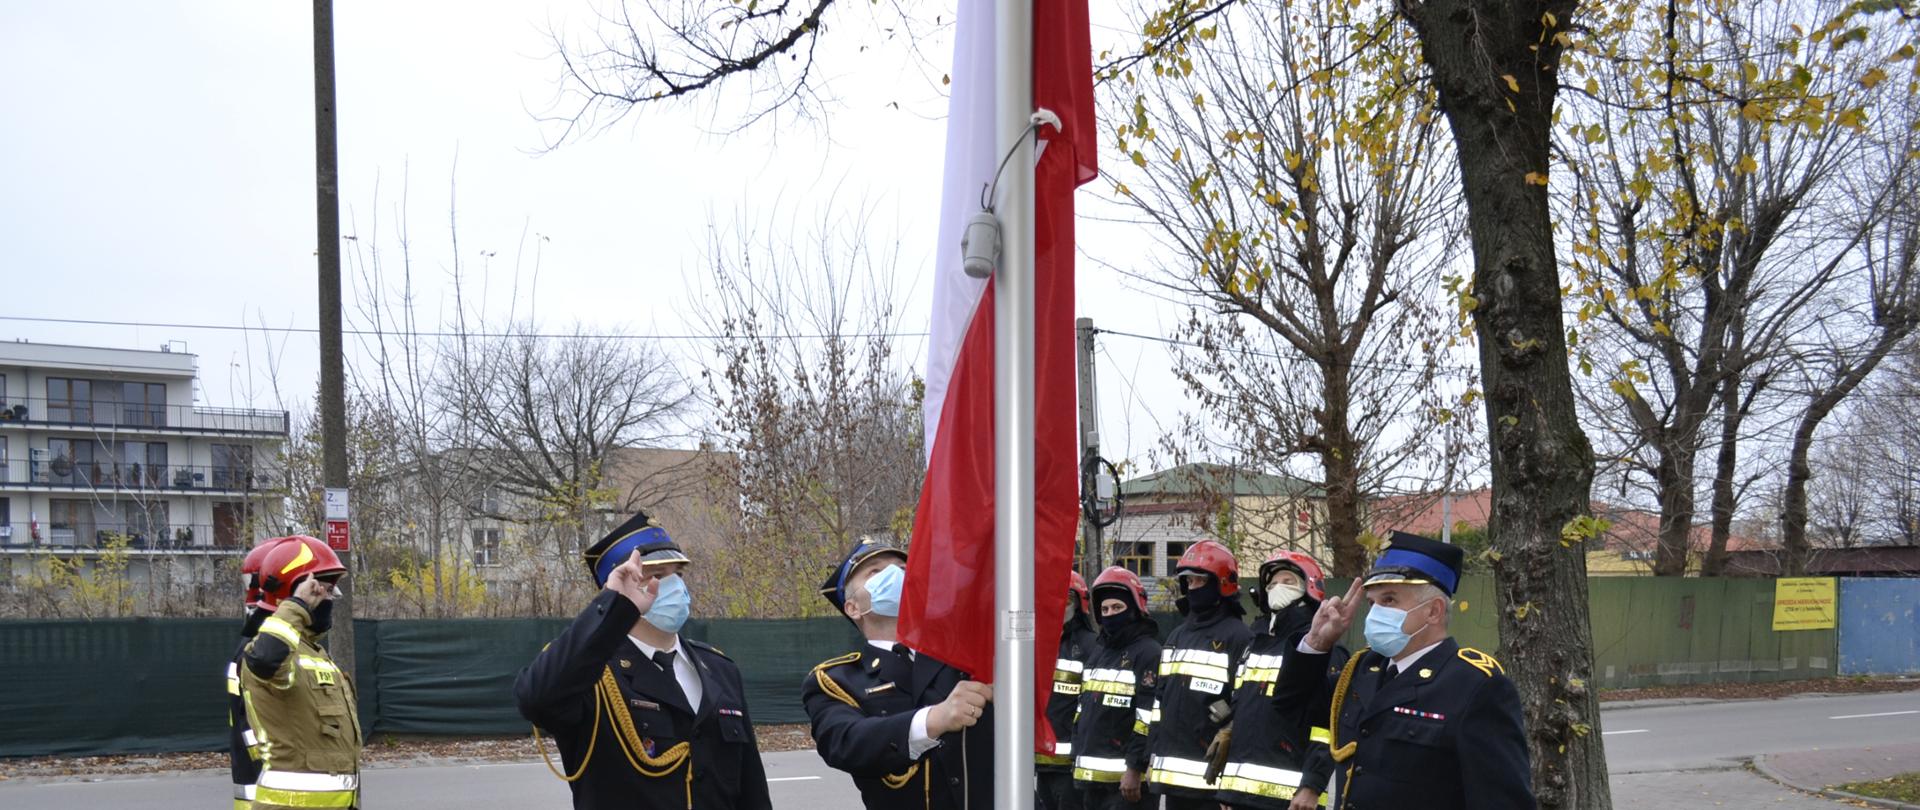 Przy maszcie flagowym stoi trzech strażaków w granatowych mundurach galowych, na głowach maja rogatywki, twarze zasłonięte maseczkami. Jeden z nich podnosi (wciąga) flagę państwową na maszt pozostali dwaj oddają honory fladze państwowej(salutują). Około dwa metry za masztem flagowym po lewej i prawej stronie stoi po czterech strażaków w ubraniach specjalnych w kolorach granatowym i piaskowym, którzy również oddają honory fladze państwowej. Na głowach mają czerwone hełmy, twarze zasłonięte kominiarkami. W tle widać ulicę, ogrodzenie, zarośla, drzewa oraz budynki. 